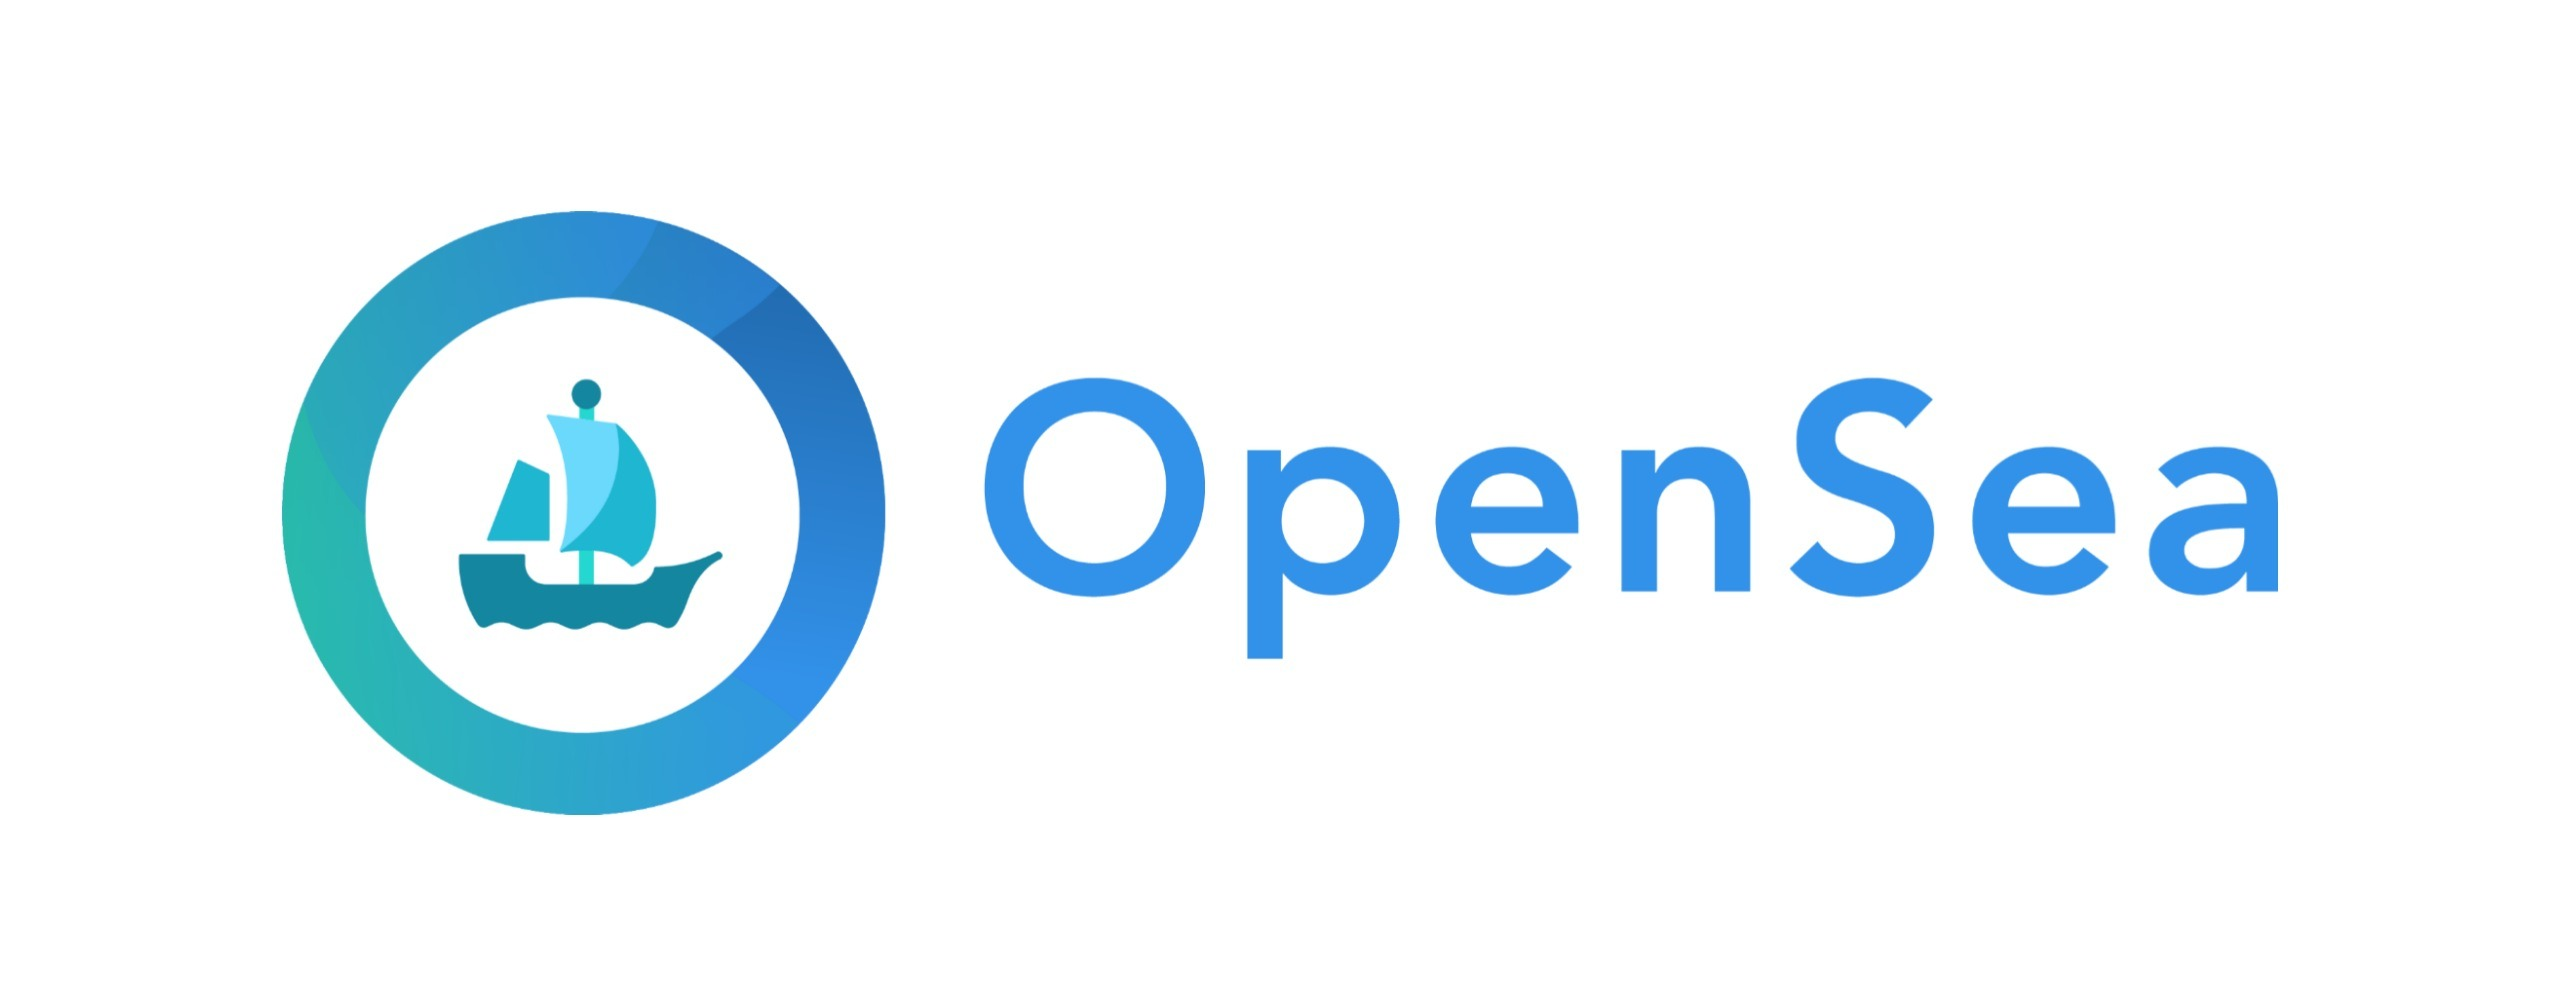 OPENSEA лого. OPENSEA logo svg. OPENSEA лого без фона. Баннер для OPENSEA.